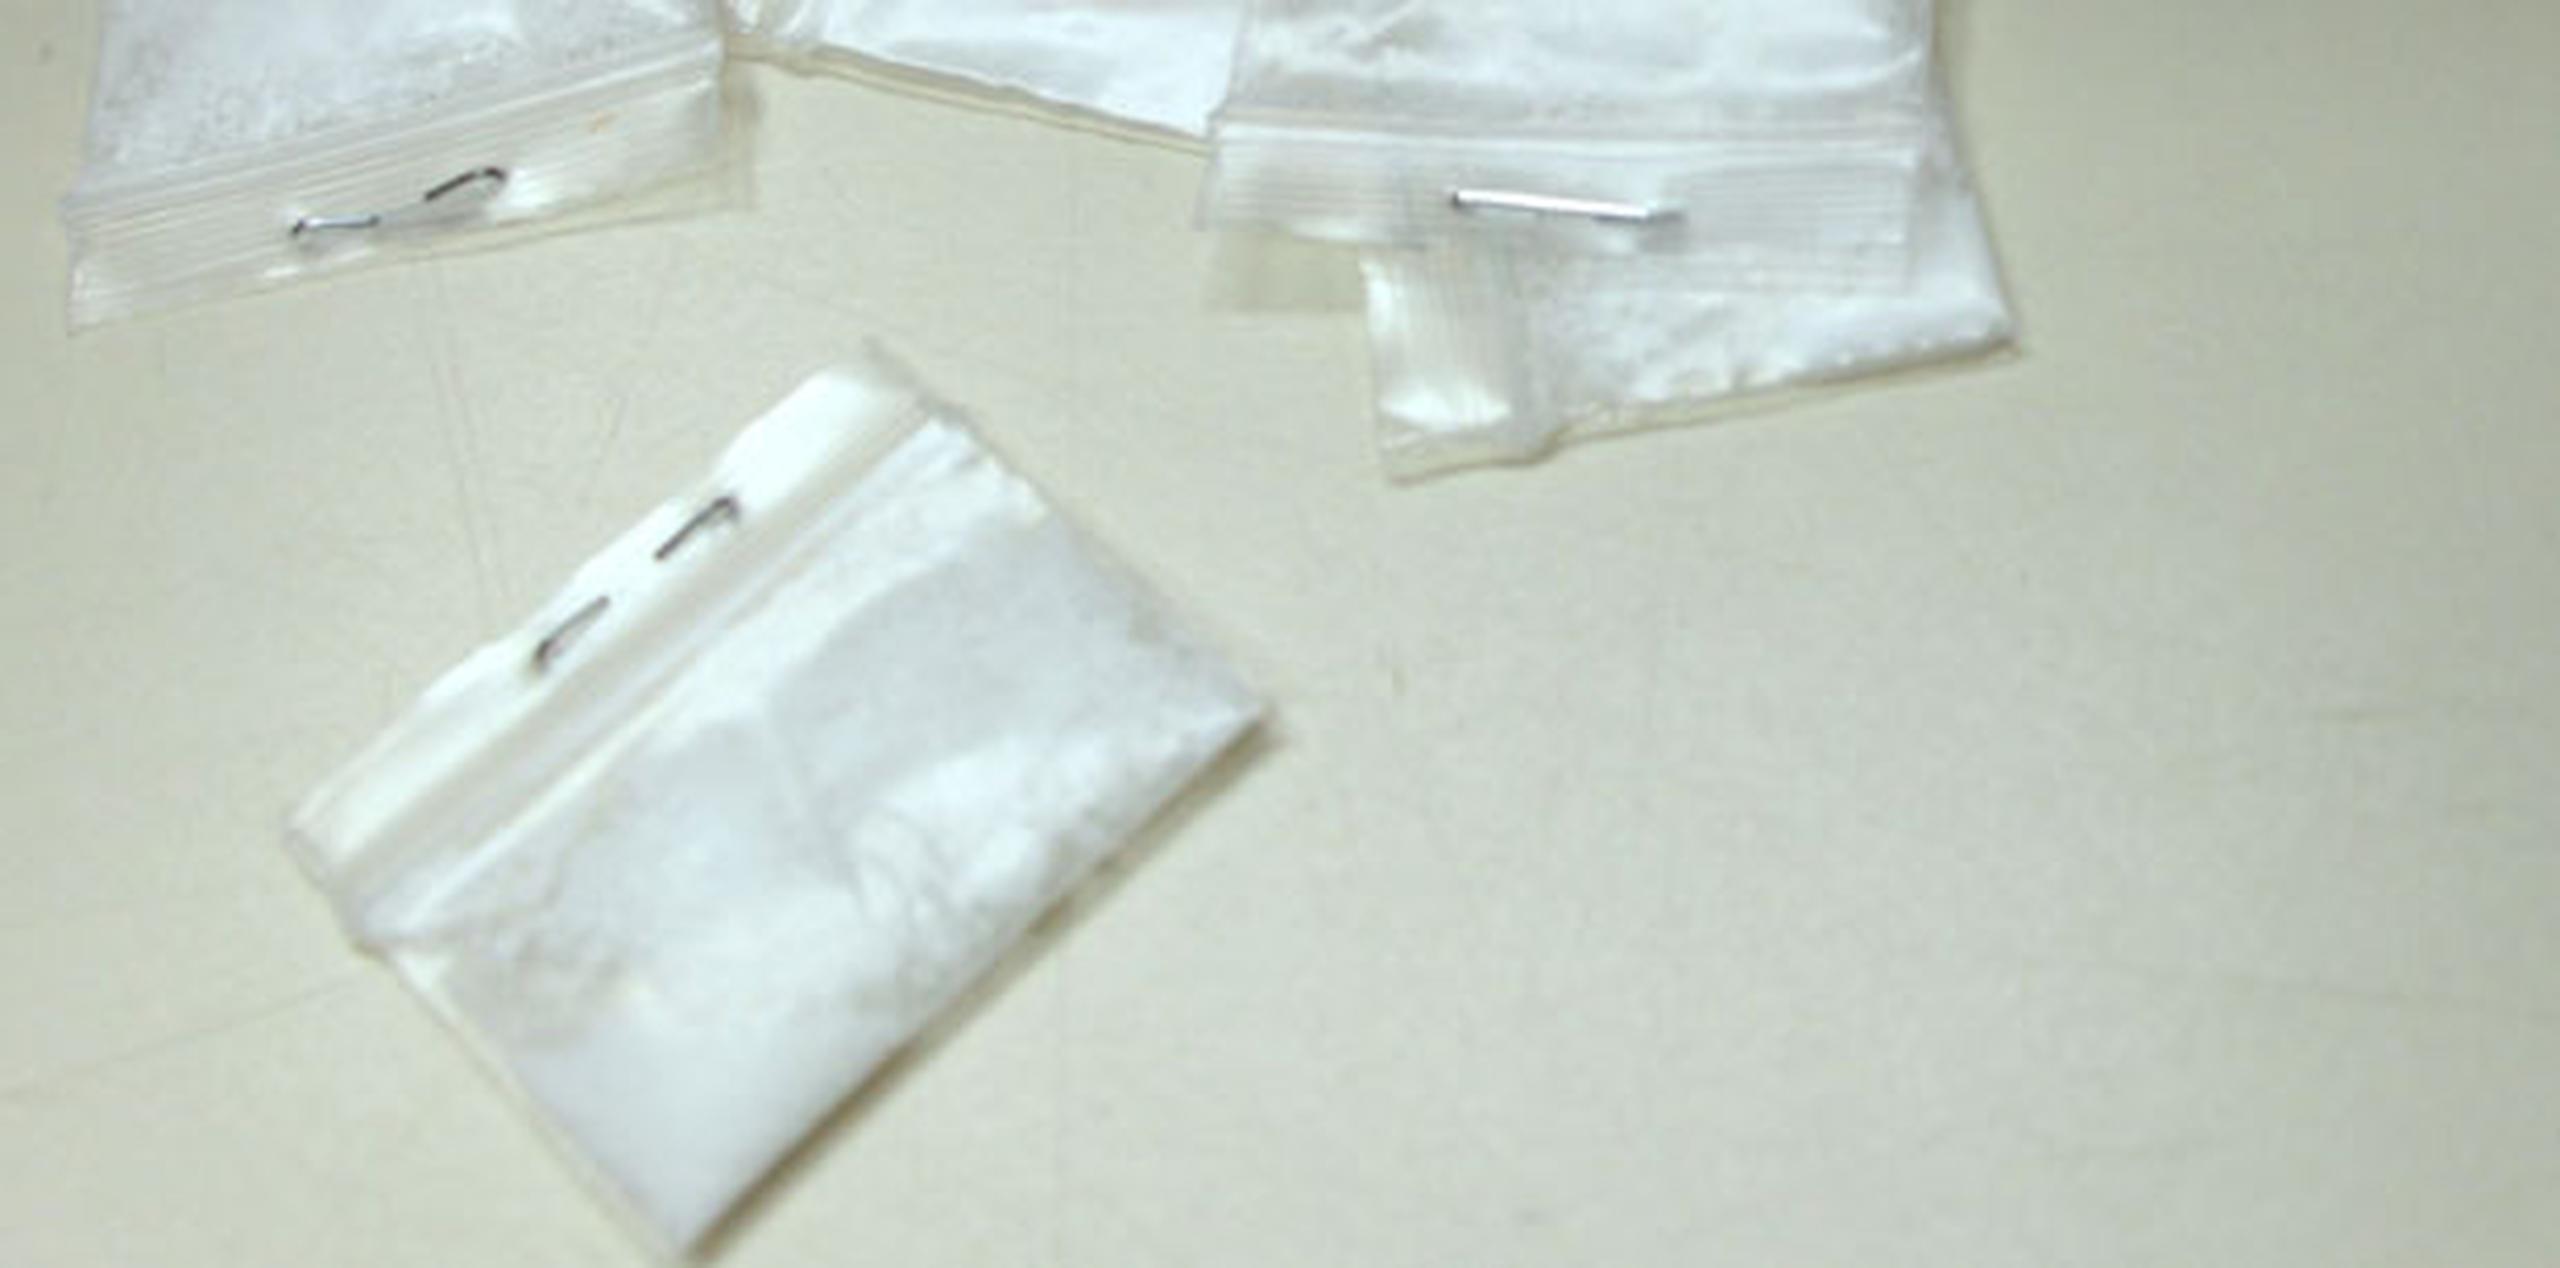 Agentes adscritos a la División de Drogas de Carolina ocuparon hoy 2.4 kilos de cocaína ocultos en un paquete durante una inspección de rutina en el almacén de una compañía privada de correos. (Archivo)